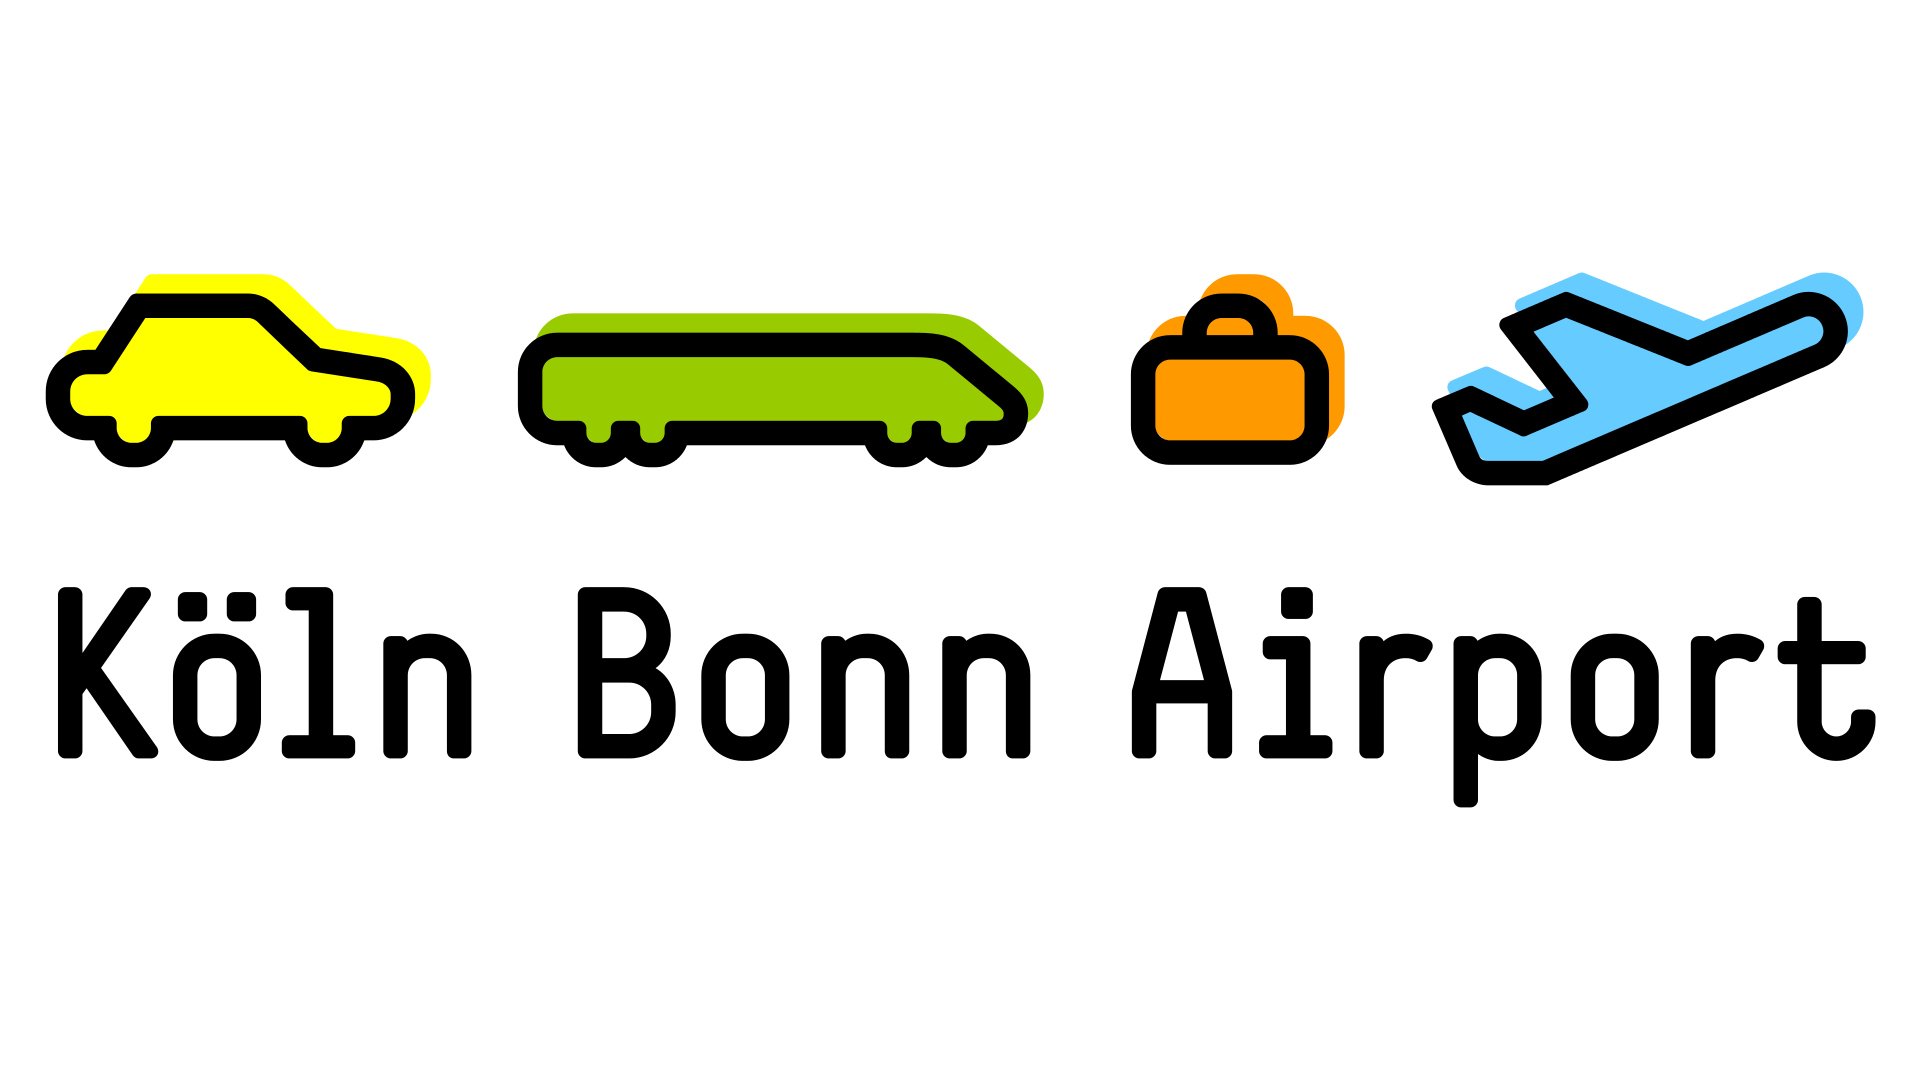 Flughafen Köln Bonn